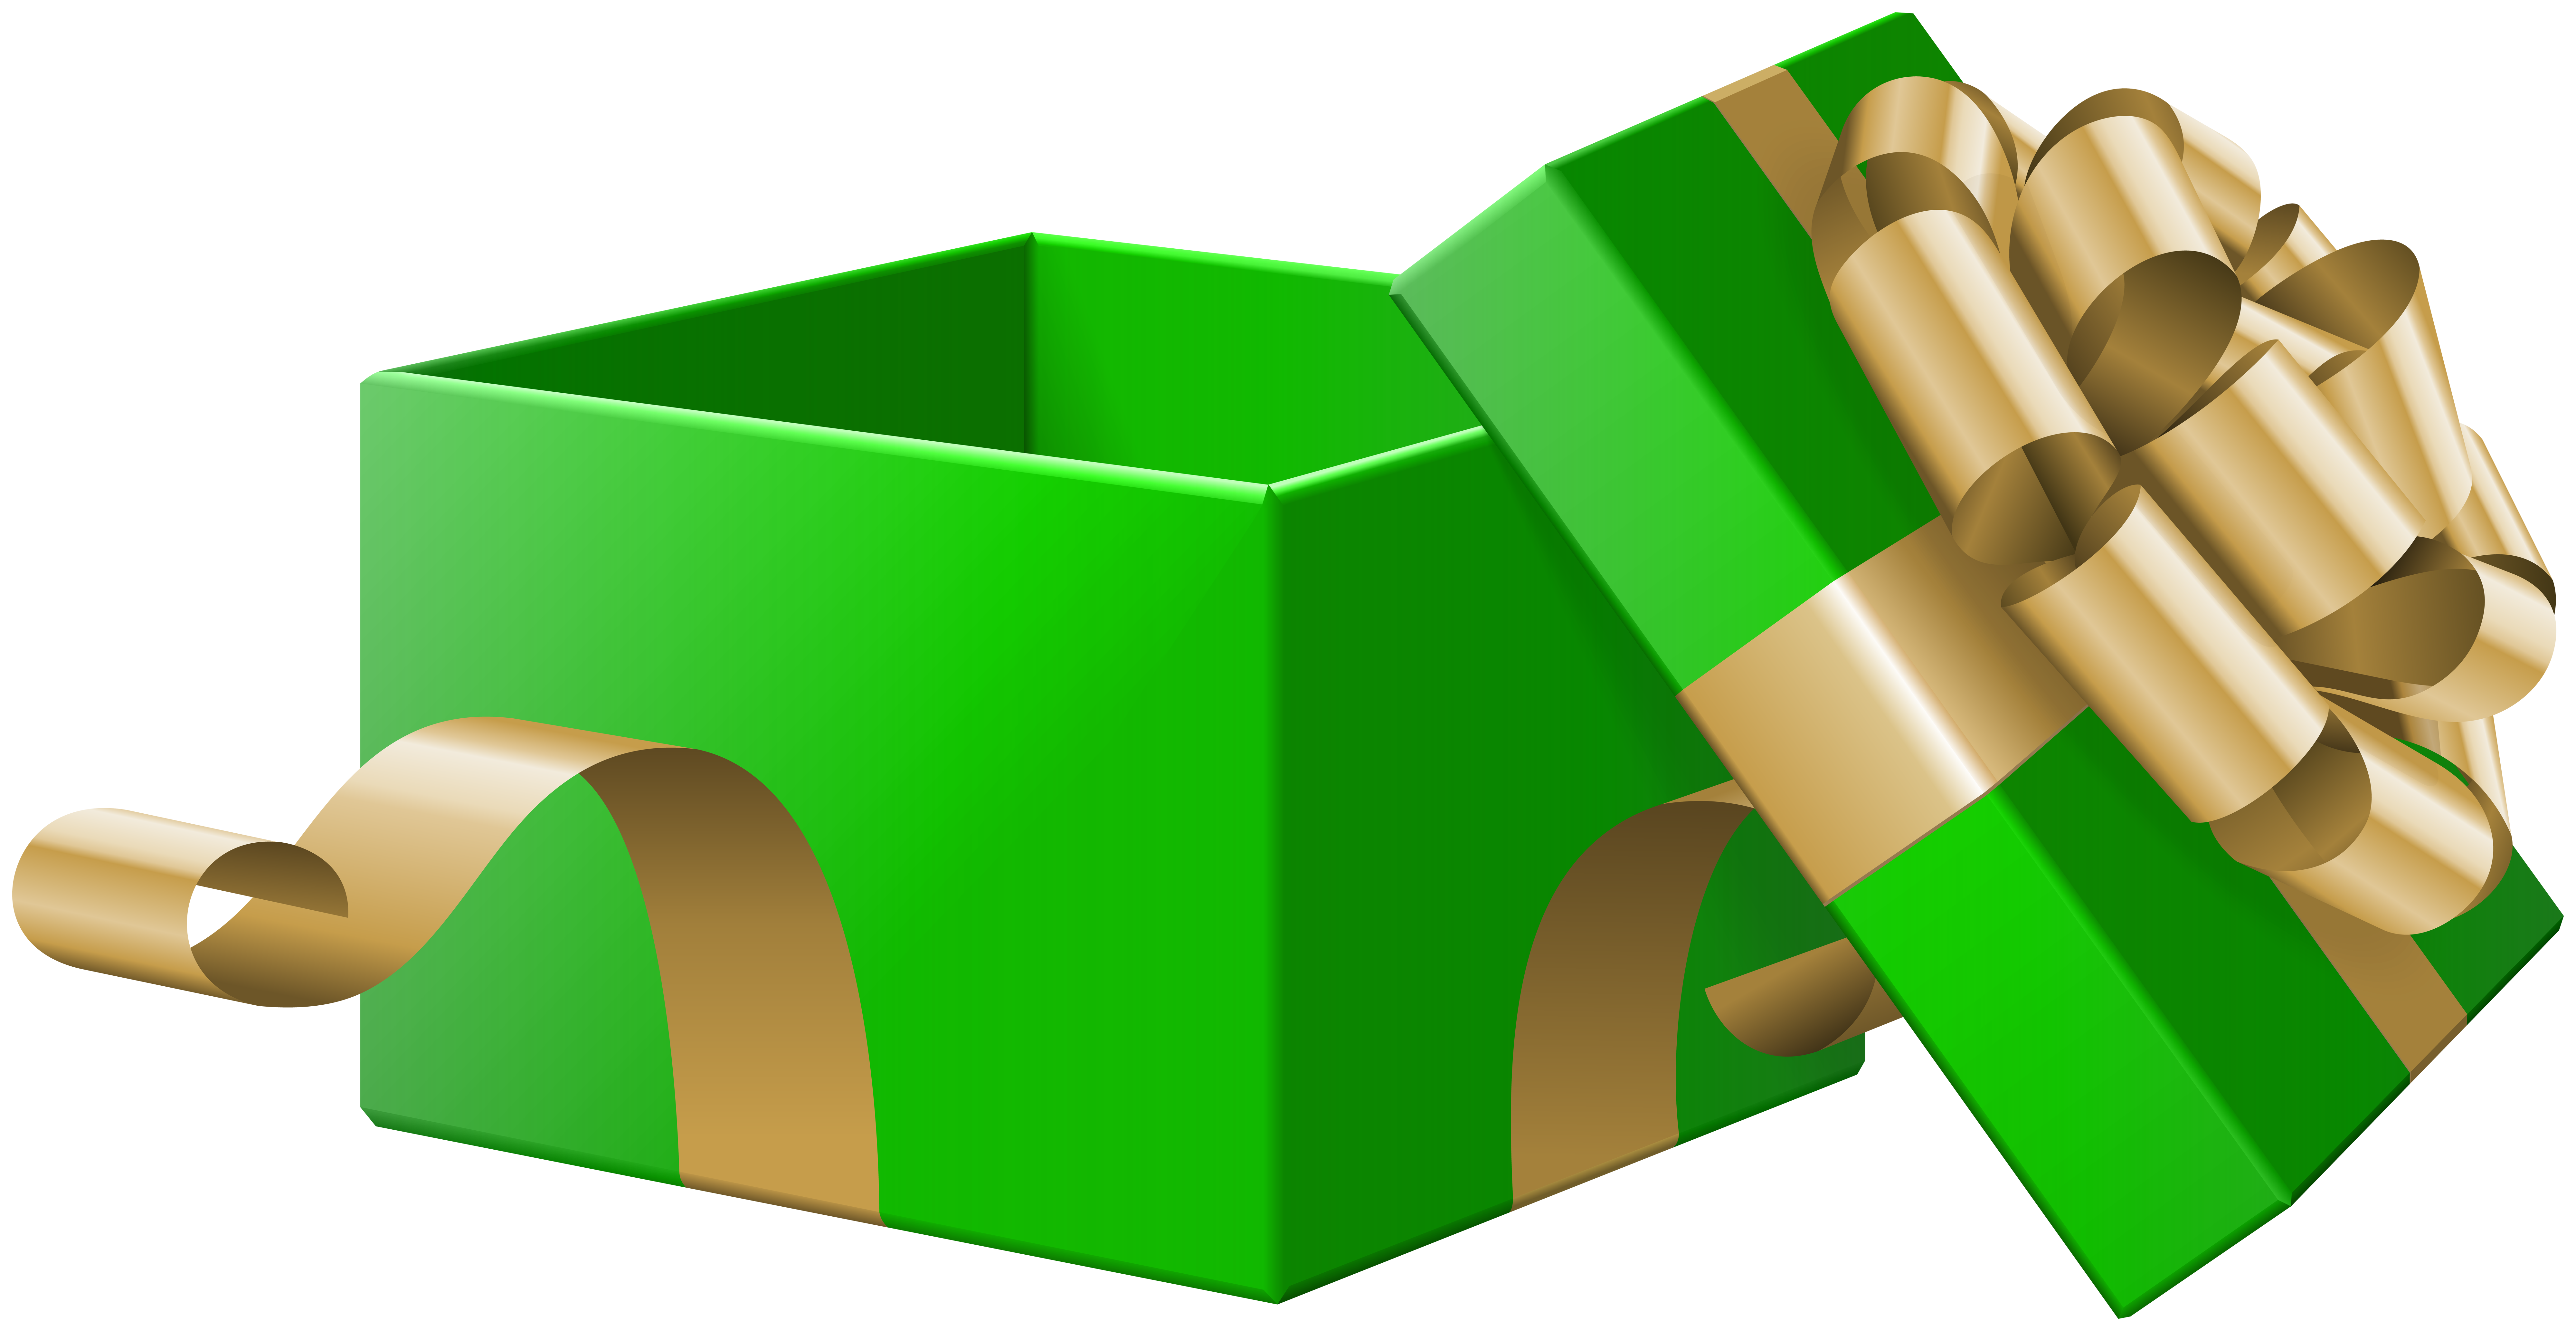 Картинка открытого подарка. Открытая подарочная коробка. Подарочная коробка открытая зеленая. Коробка подарок на прозрачном фоне. Зеленый подарок на прозрачном фоне.